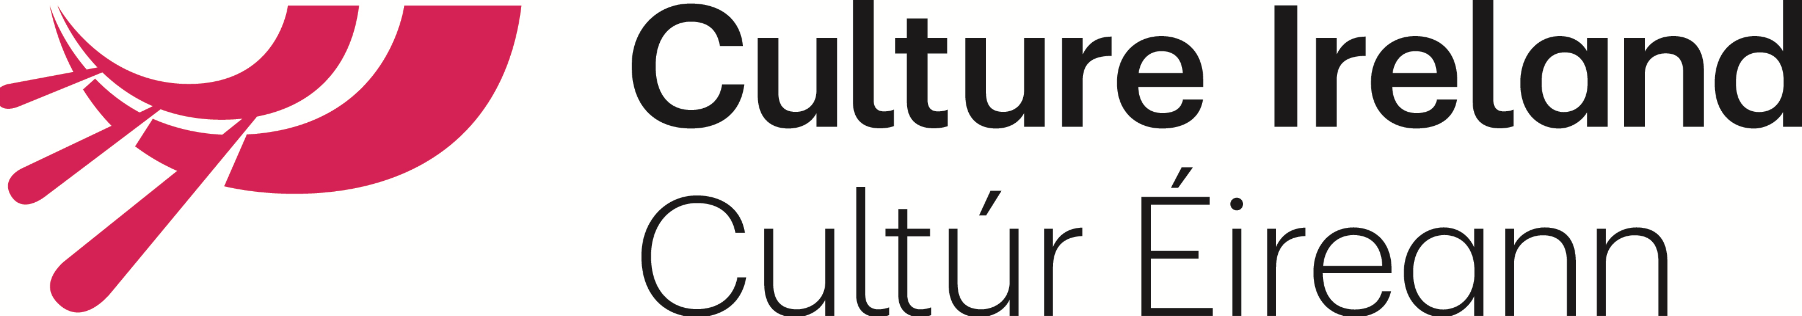 Culture-ireland-logo.png